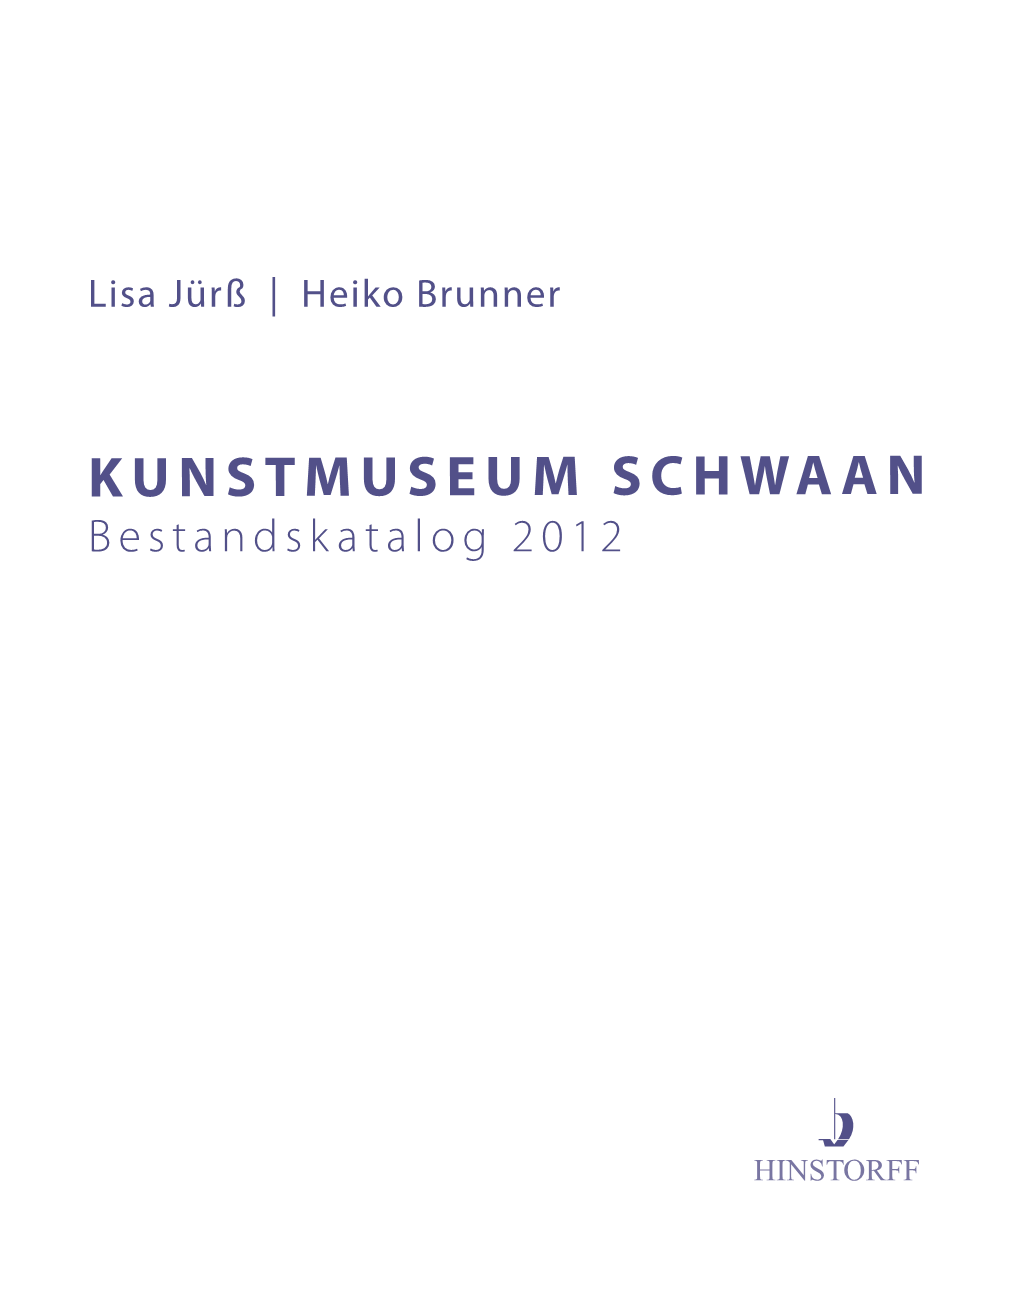 KUNSTMUSEUM SCHWAAN Bestandskatalog 2012